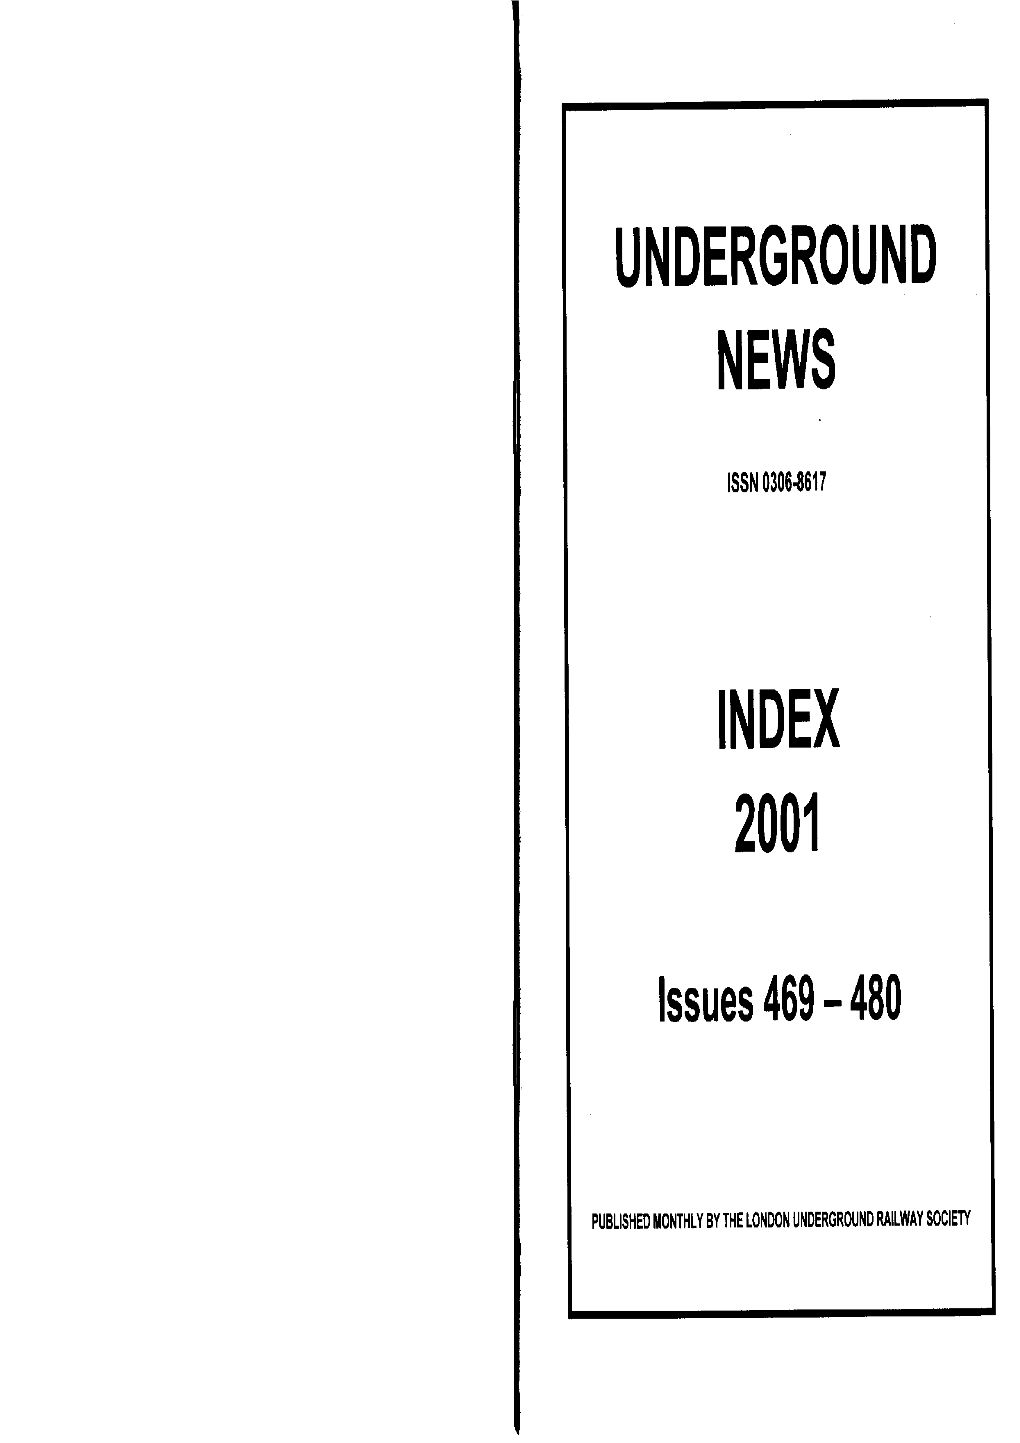 Underground News Index 2001